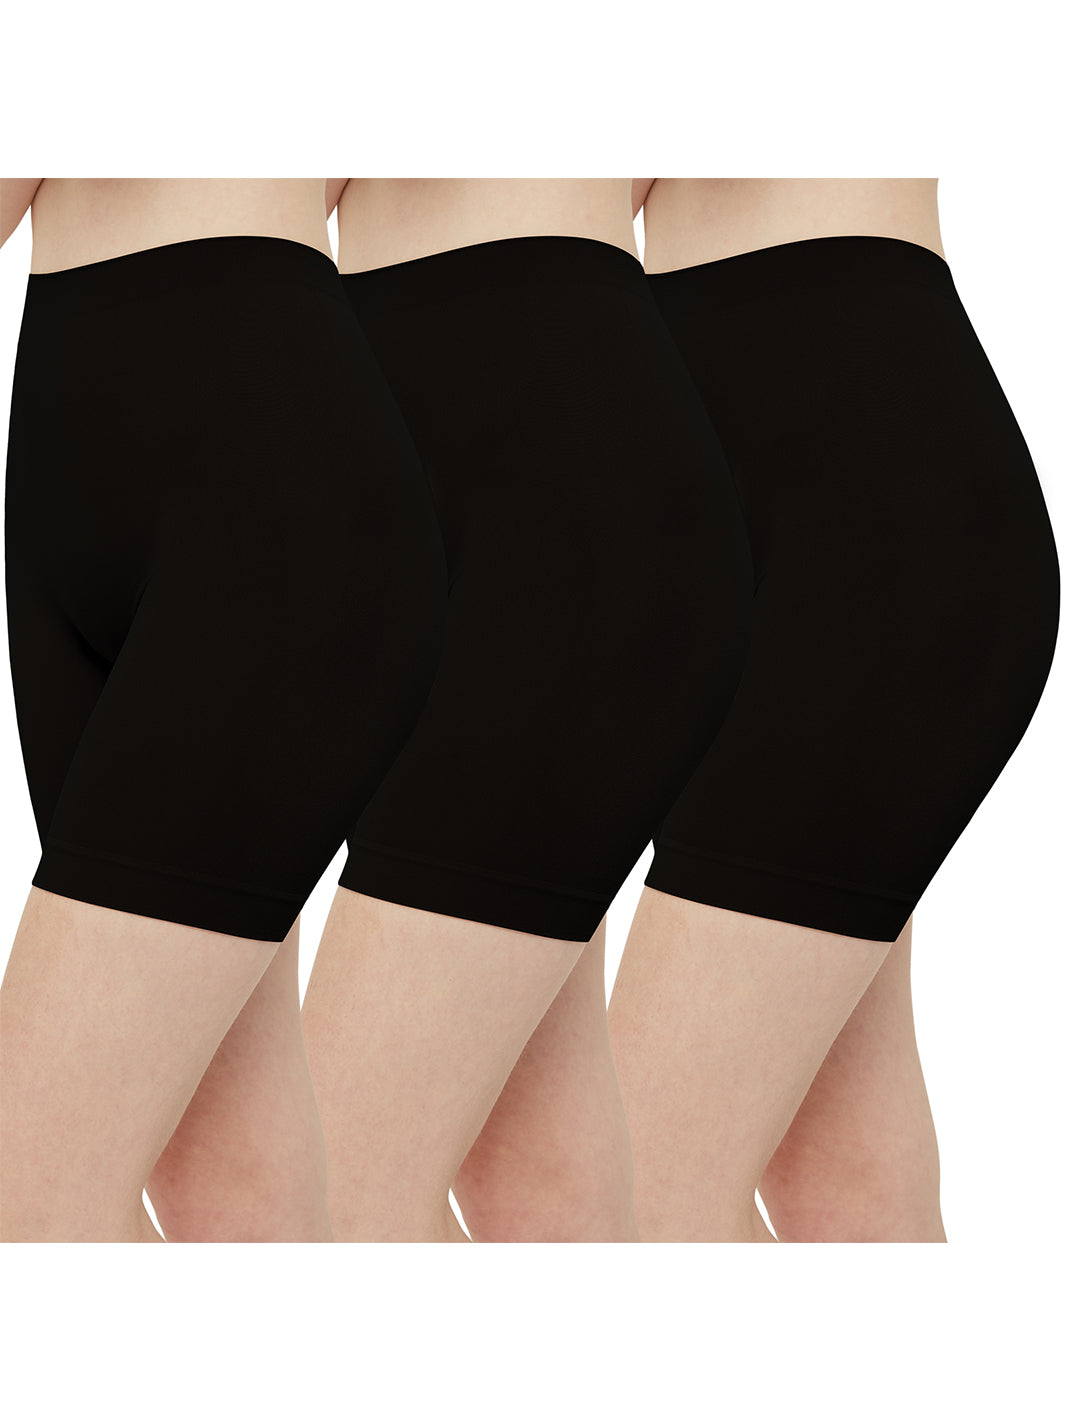 Slip-Shorts für Damen im 3er-Pack